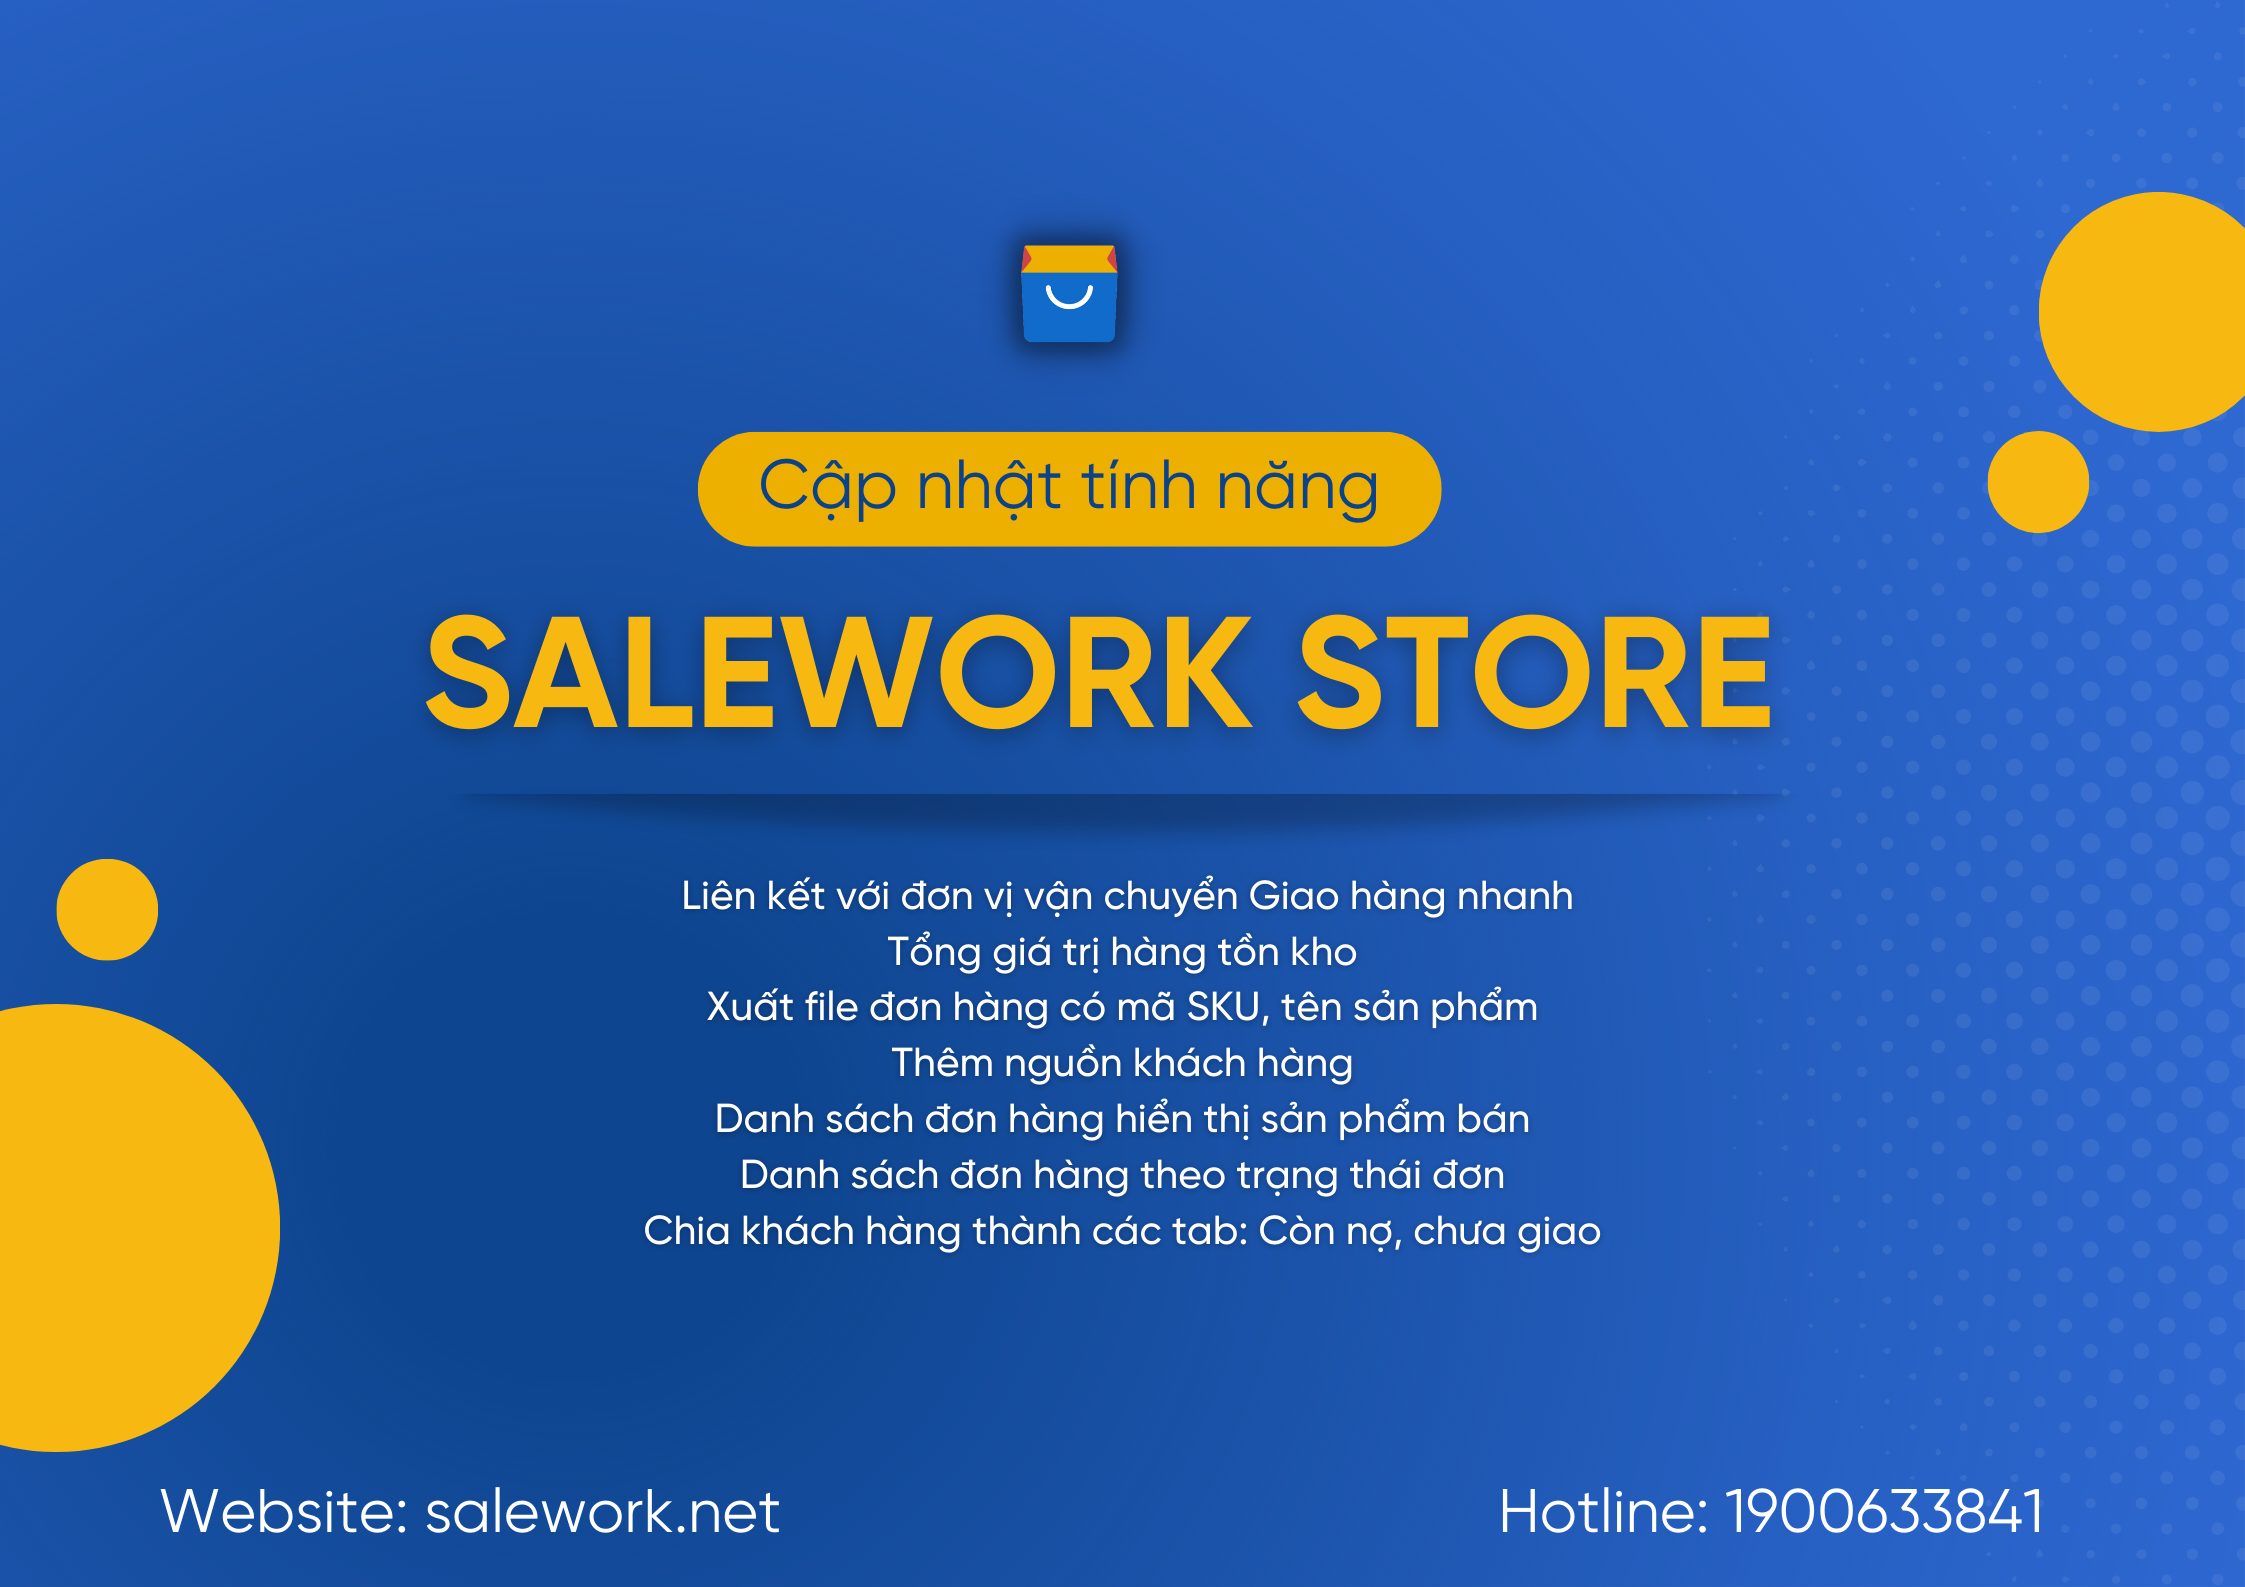 [ Thông báo] Salework Store cập nhật phần mềm - 21